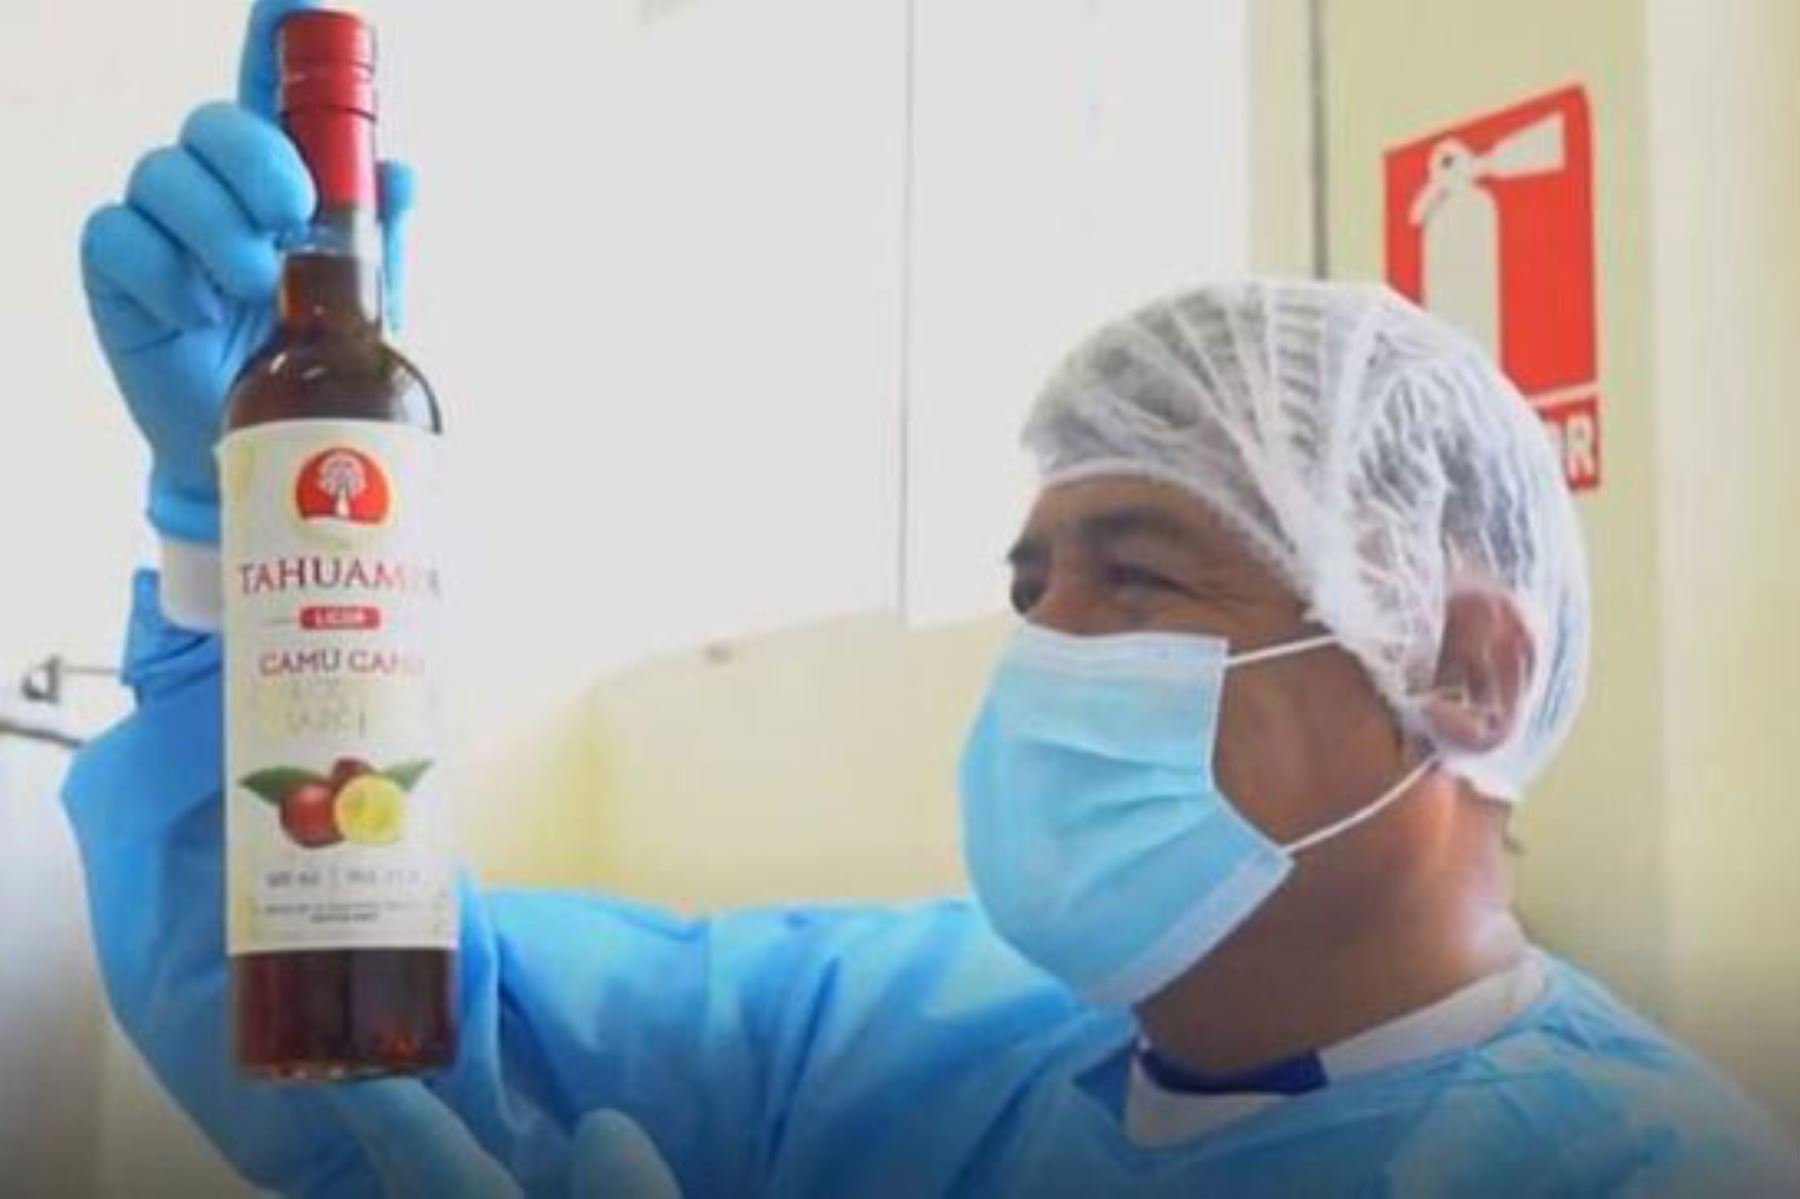 Con el soporte del CITEproductivo Maynas, la empresa Tahuampa produce licor de camu camu con corteza amazónica. Foto: ANDINA/difusión.